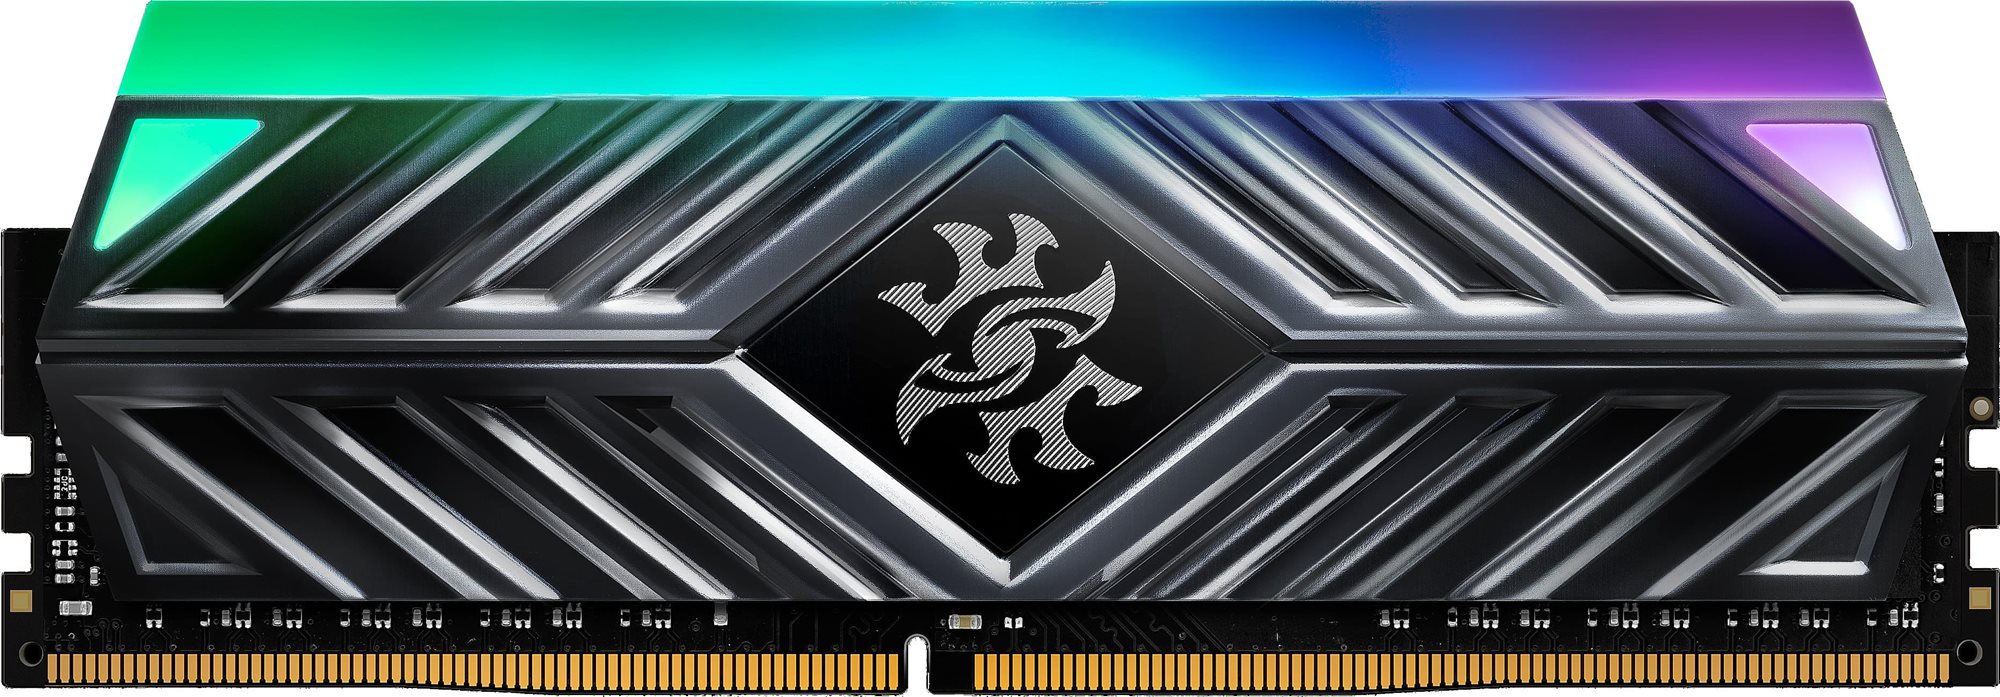 RAM memória ADATA XPG D41 8GB DDR4 3600MHz CL18 RGB Black